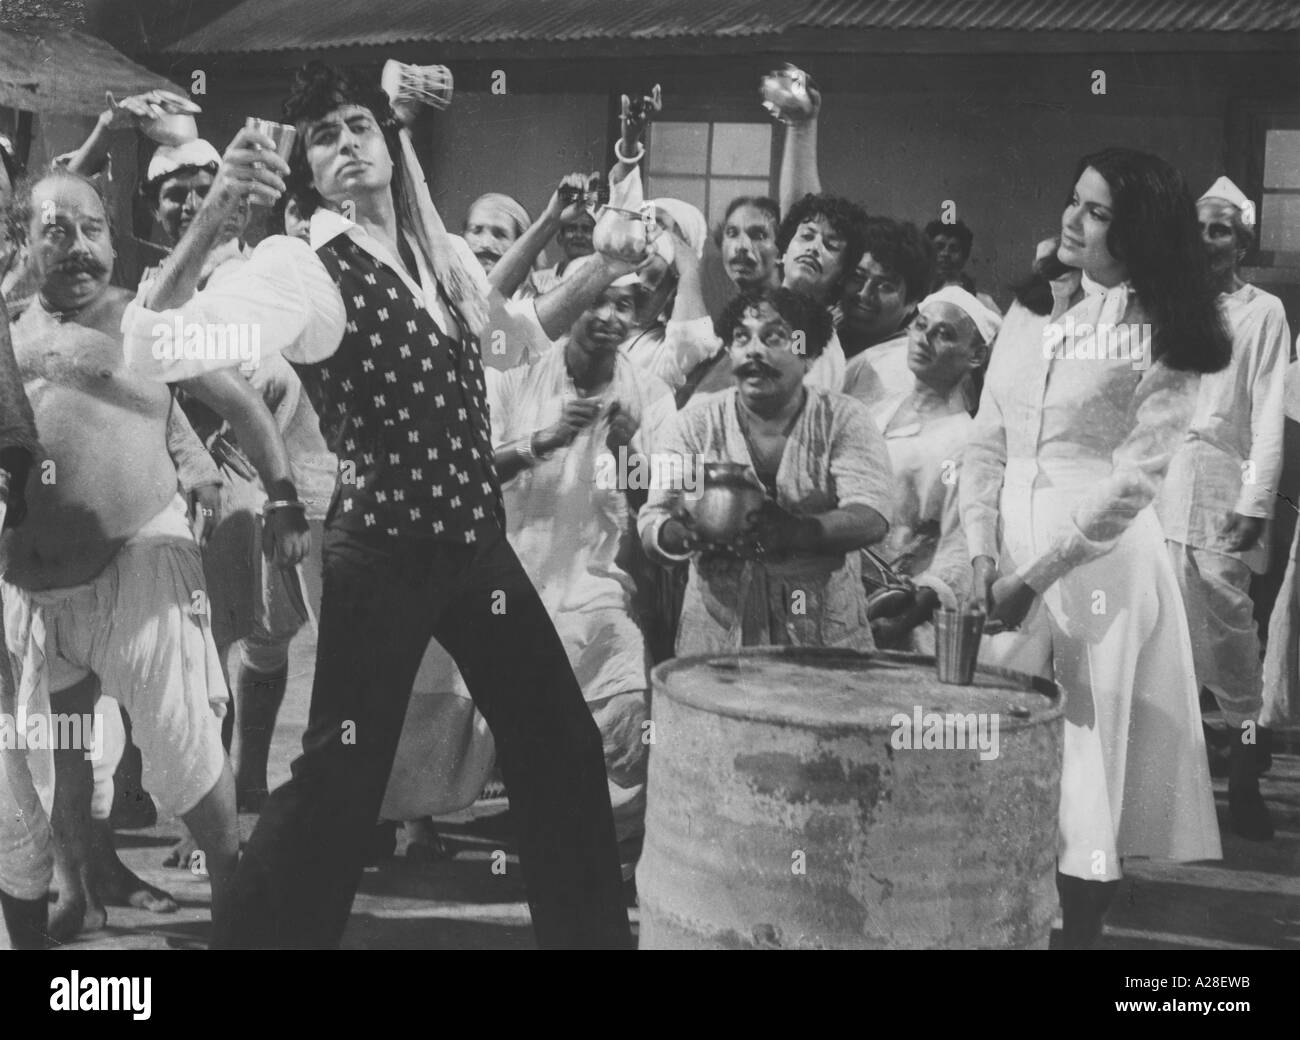 Alter Jahrgang 1900s Bild Indian Bollywood Hindi Film Star Actor Amitabh Bachchan mit der Schauspielerin Zeenat Aman im Film Don India Asia Stockfoto